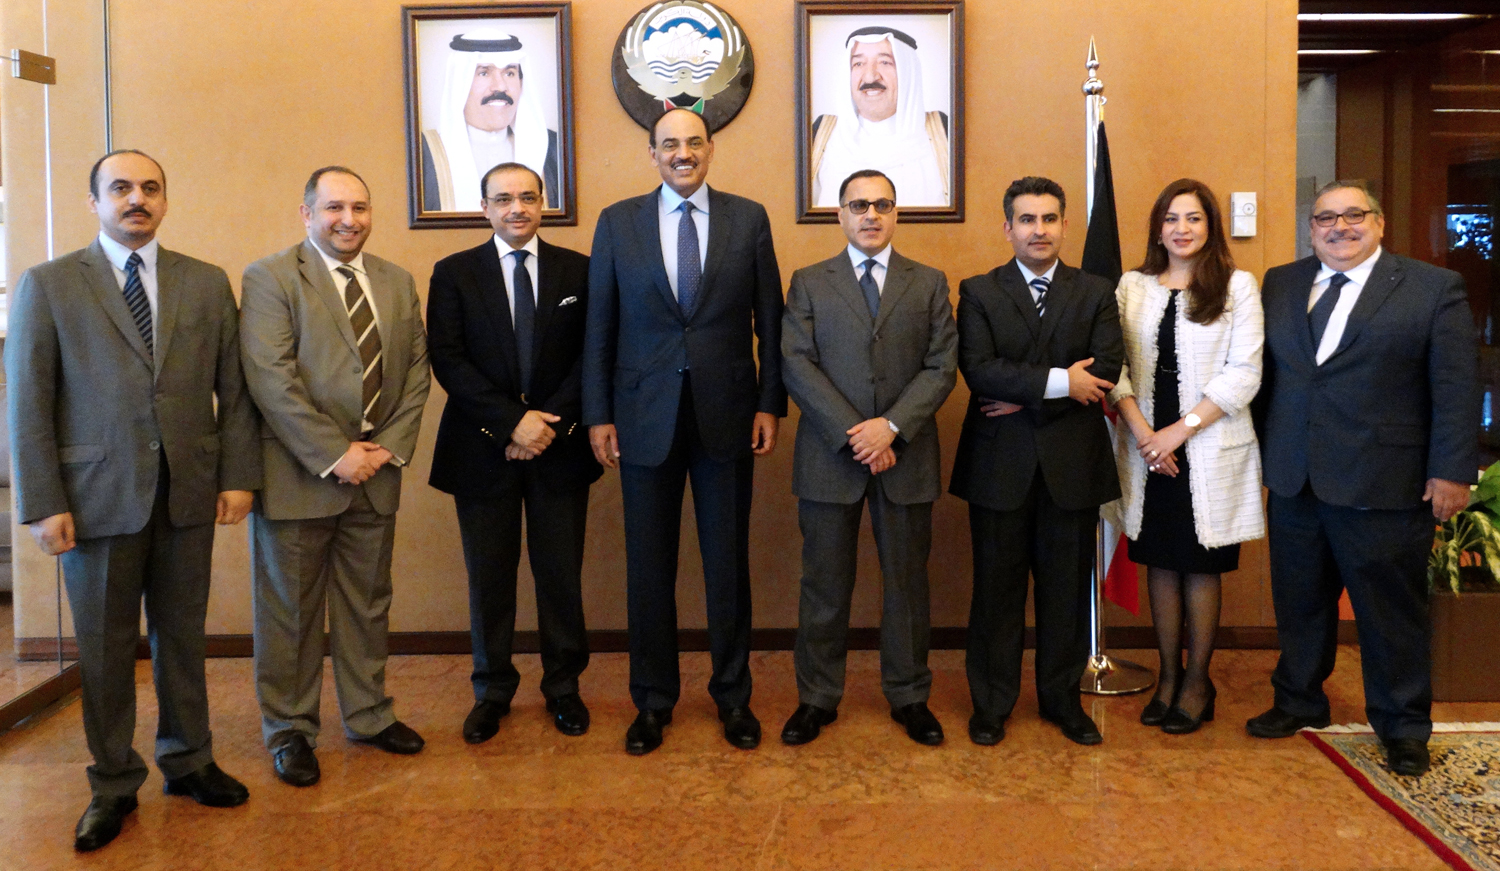 Kuwaiti First Deputy Prime Minister and Foreign Minister Sheikh Sabah Al-Khaled Al-Hamad Al-Sabah amidst Ambassador Jamal Al-Ghnem, ambassador Bader Al-Tunaib and Kuwait delegates to the UN